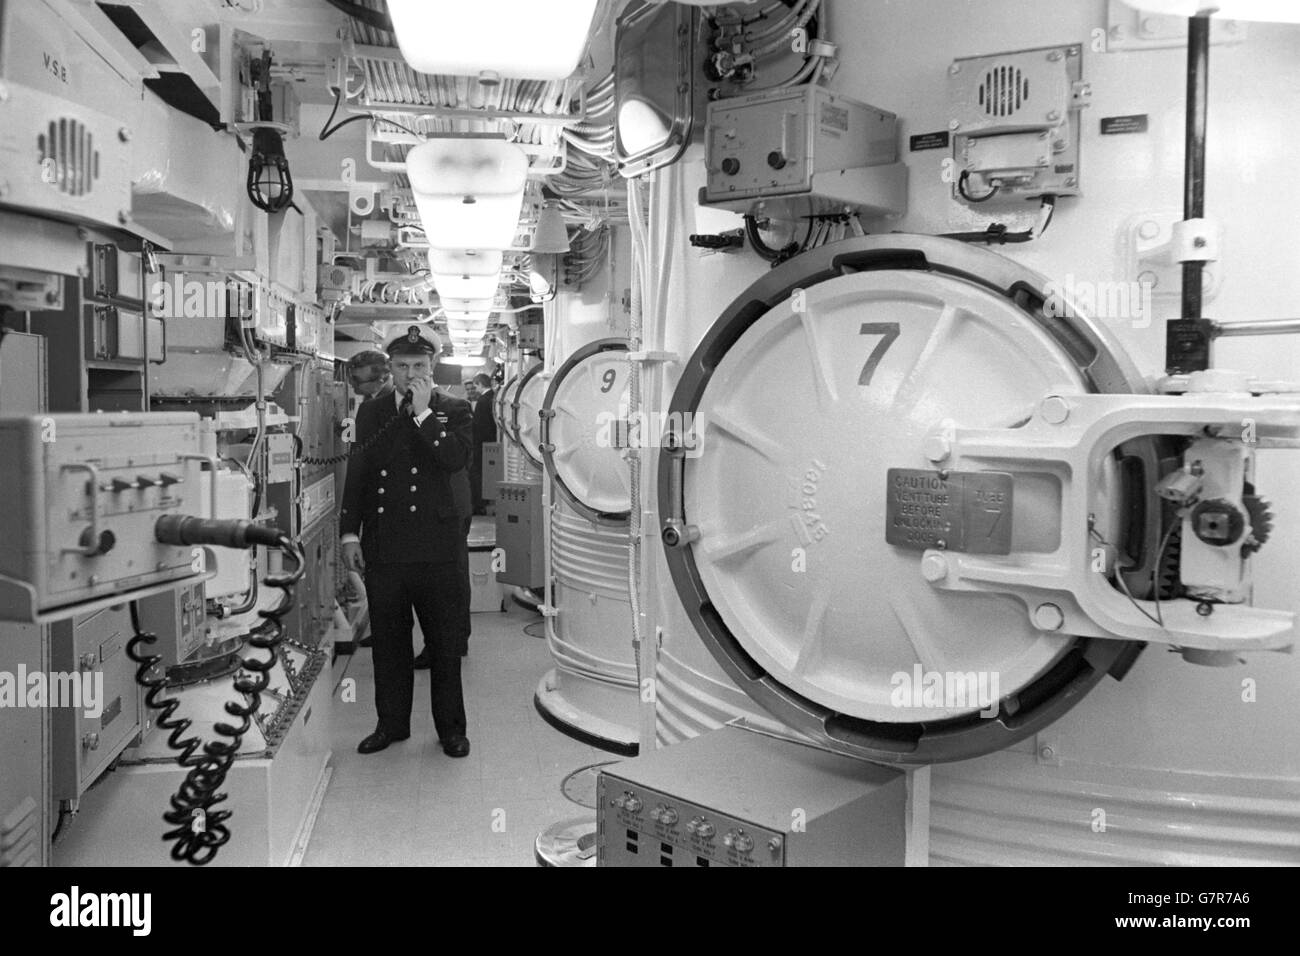 Militaire - sous-marin Polaris - résolution HMS - chantier naval Vickers, Barrow-in-Furness. 350 millions, se joindront à la Marine royale d'ici 1970. Banque D'Images